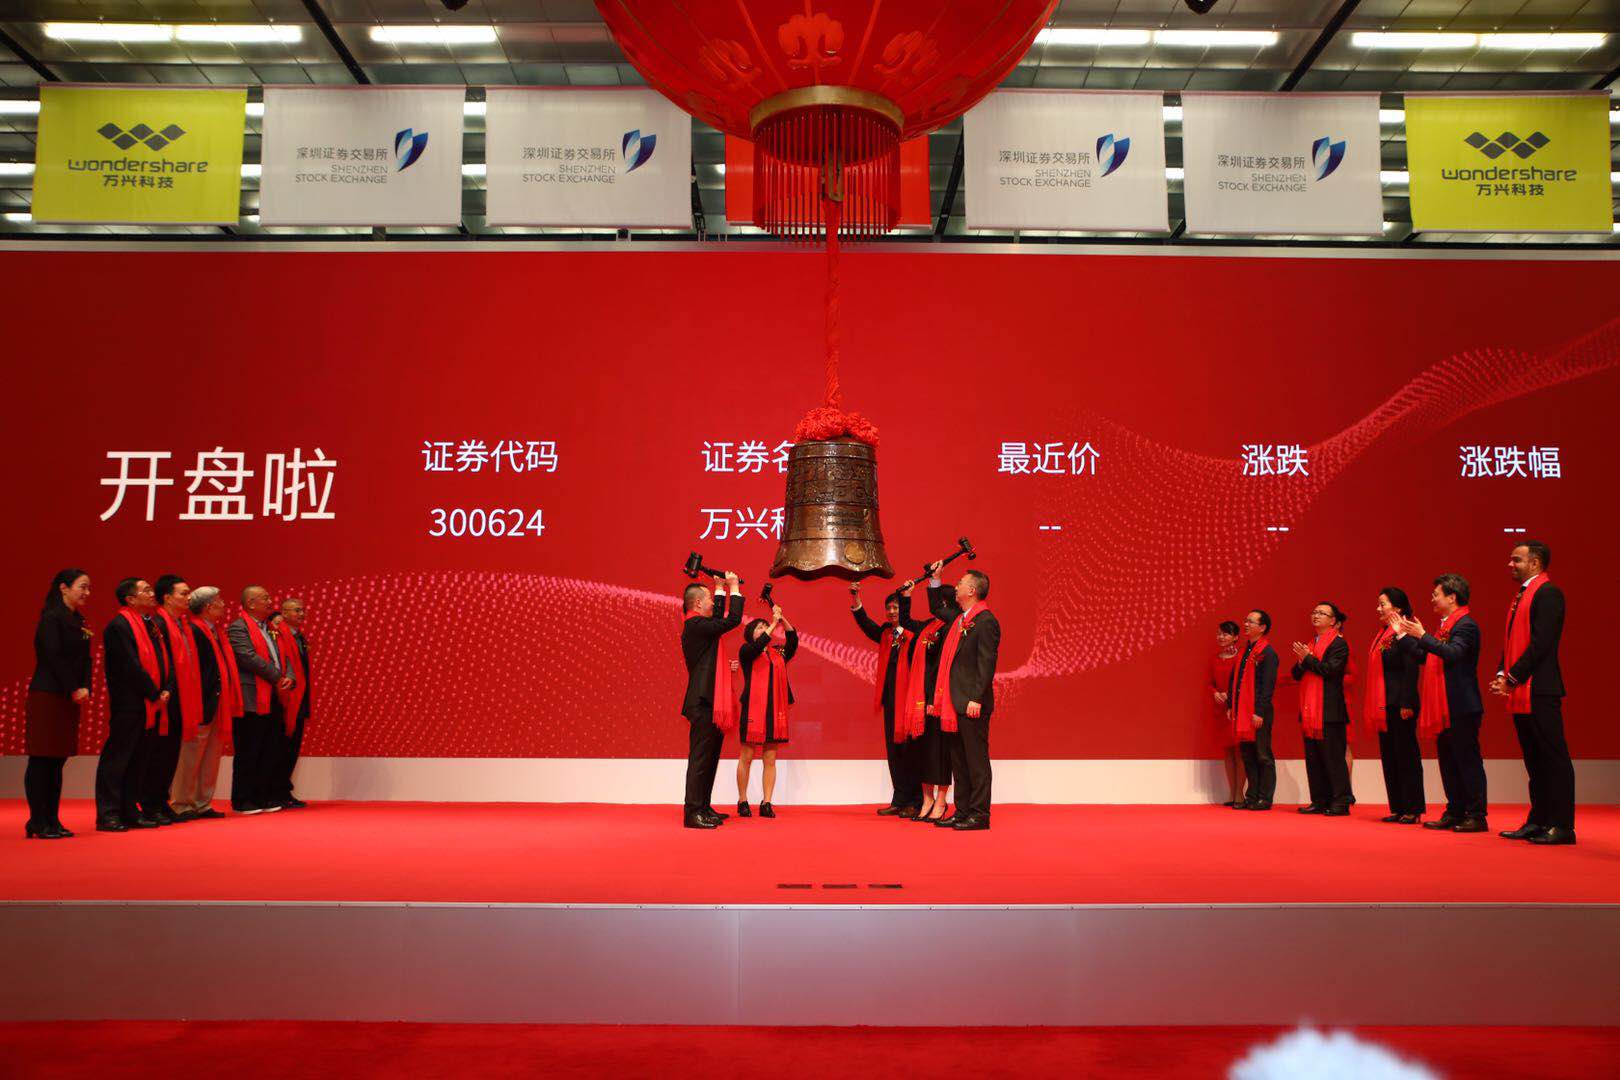 消费类软件第一股万兴科技在深圳证券交易所敲钟上市